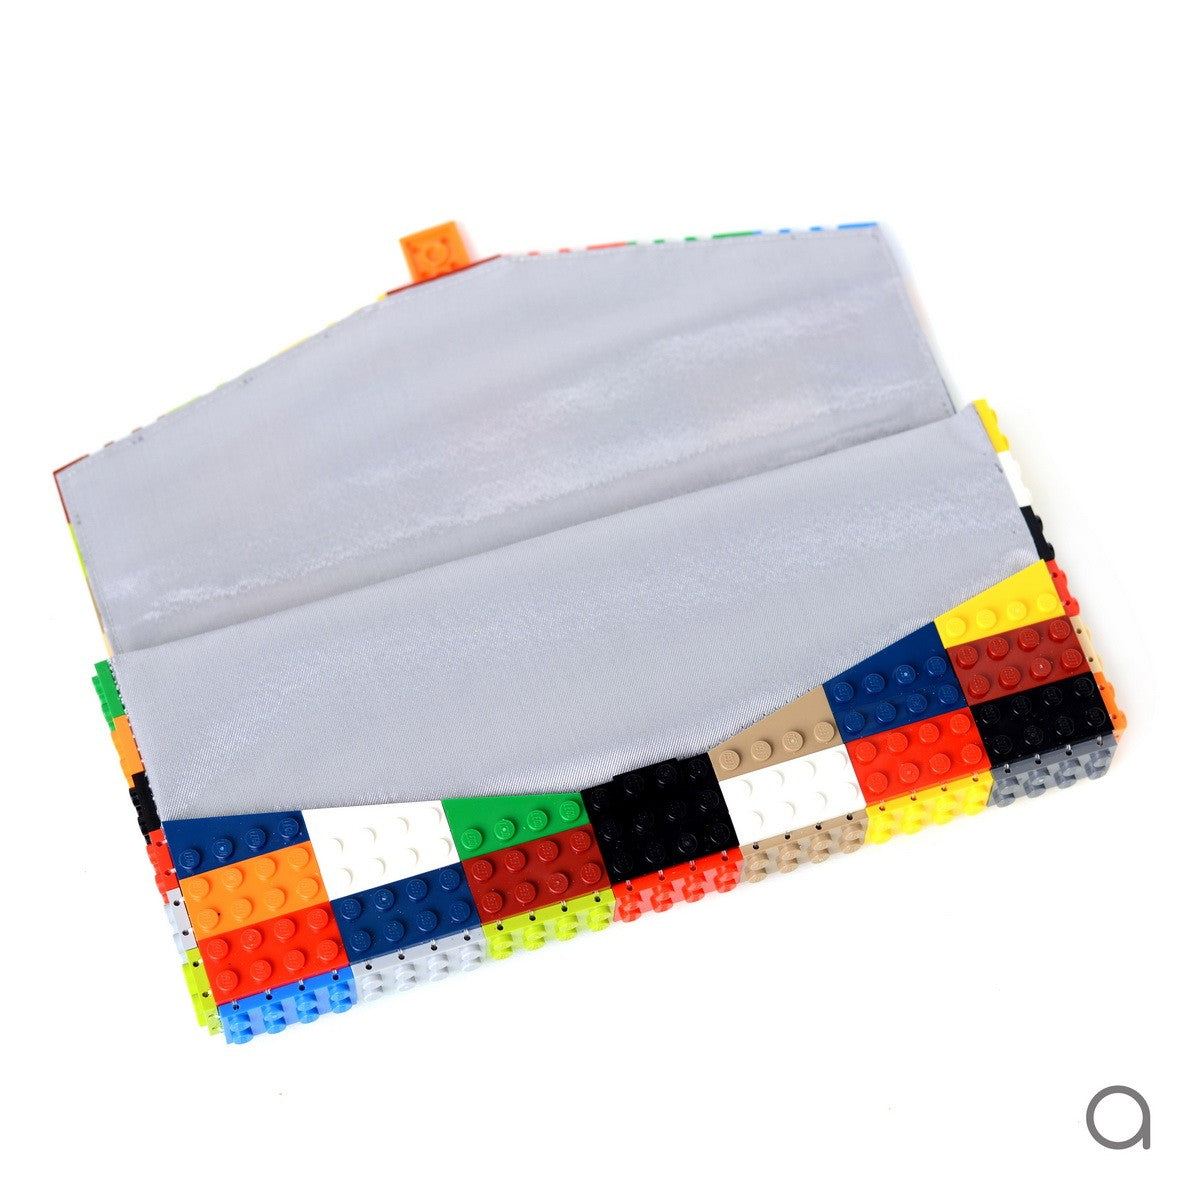 Multicolor envelope flap clutch